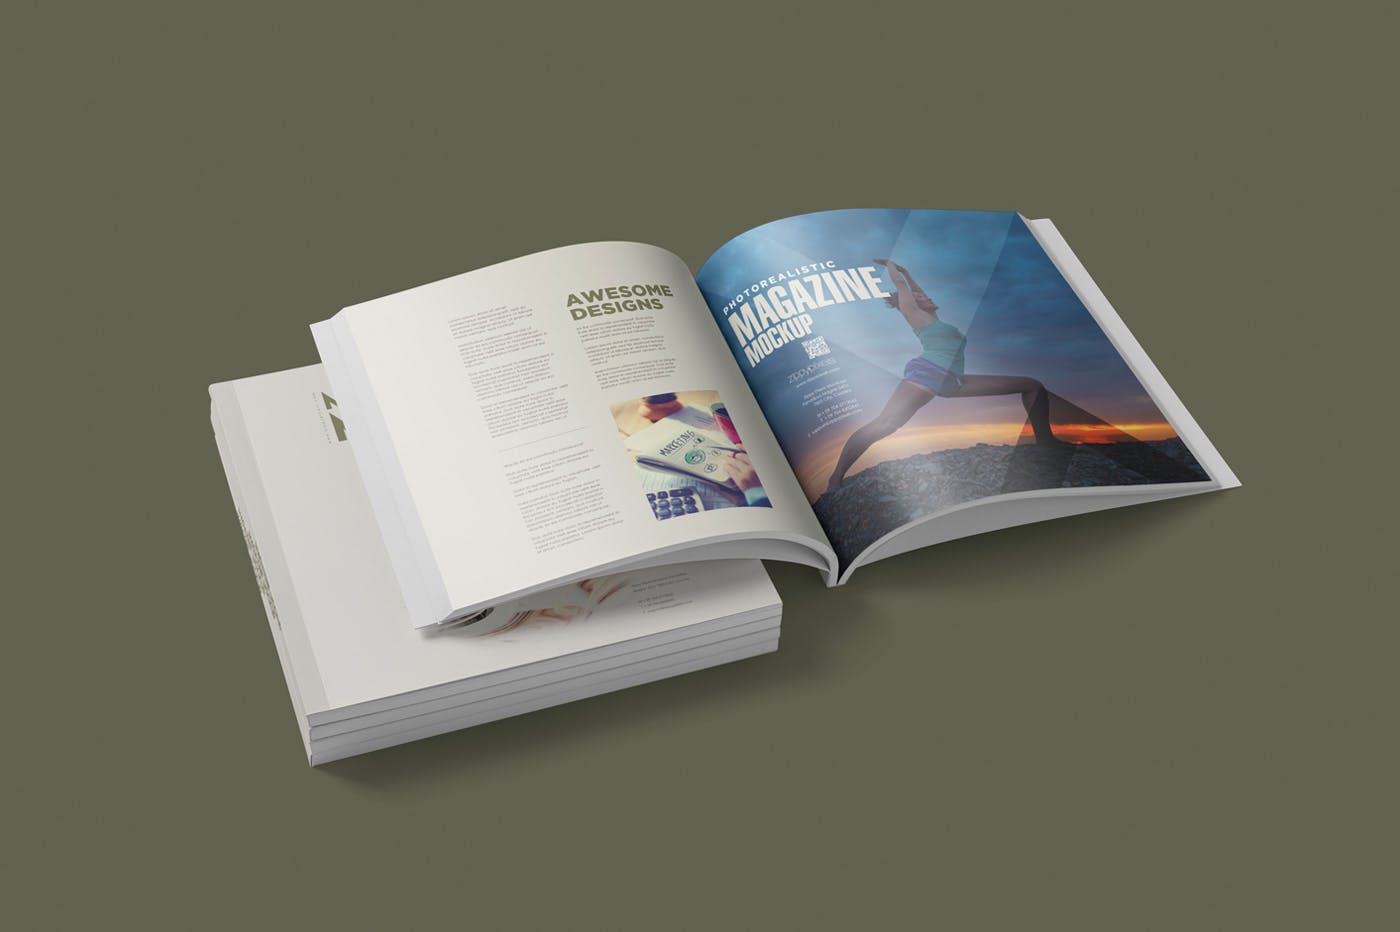 方形杂志印刷效果图样机素材库精选PSD模板 Square Magazine Mockup Set插图(2)